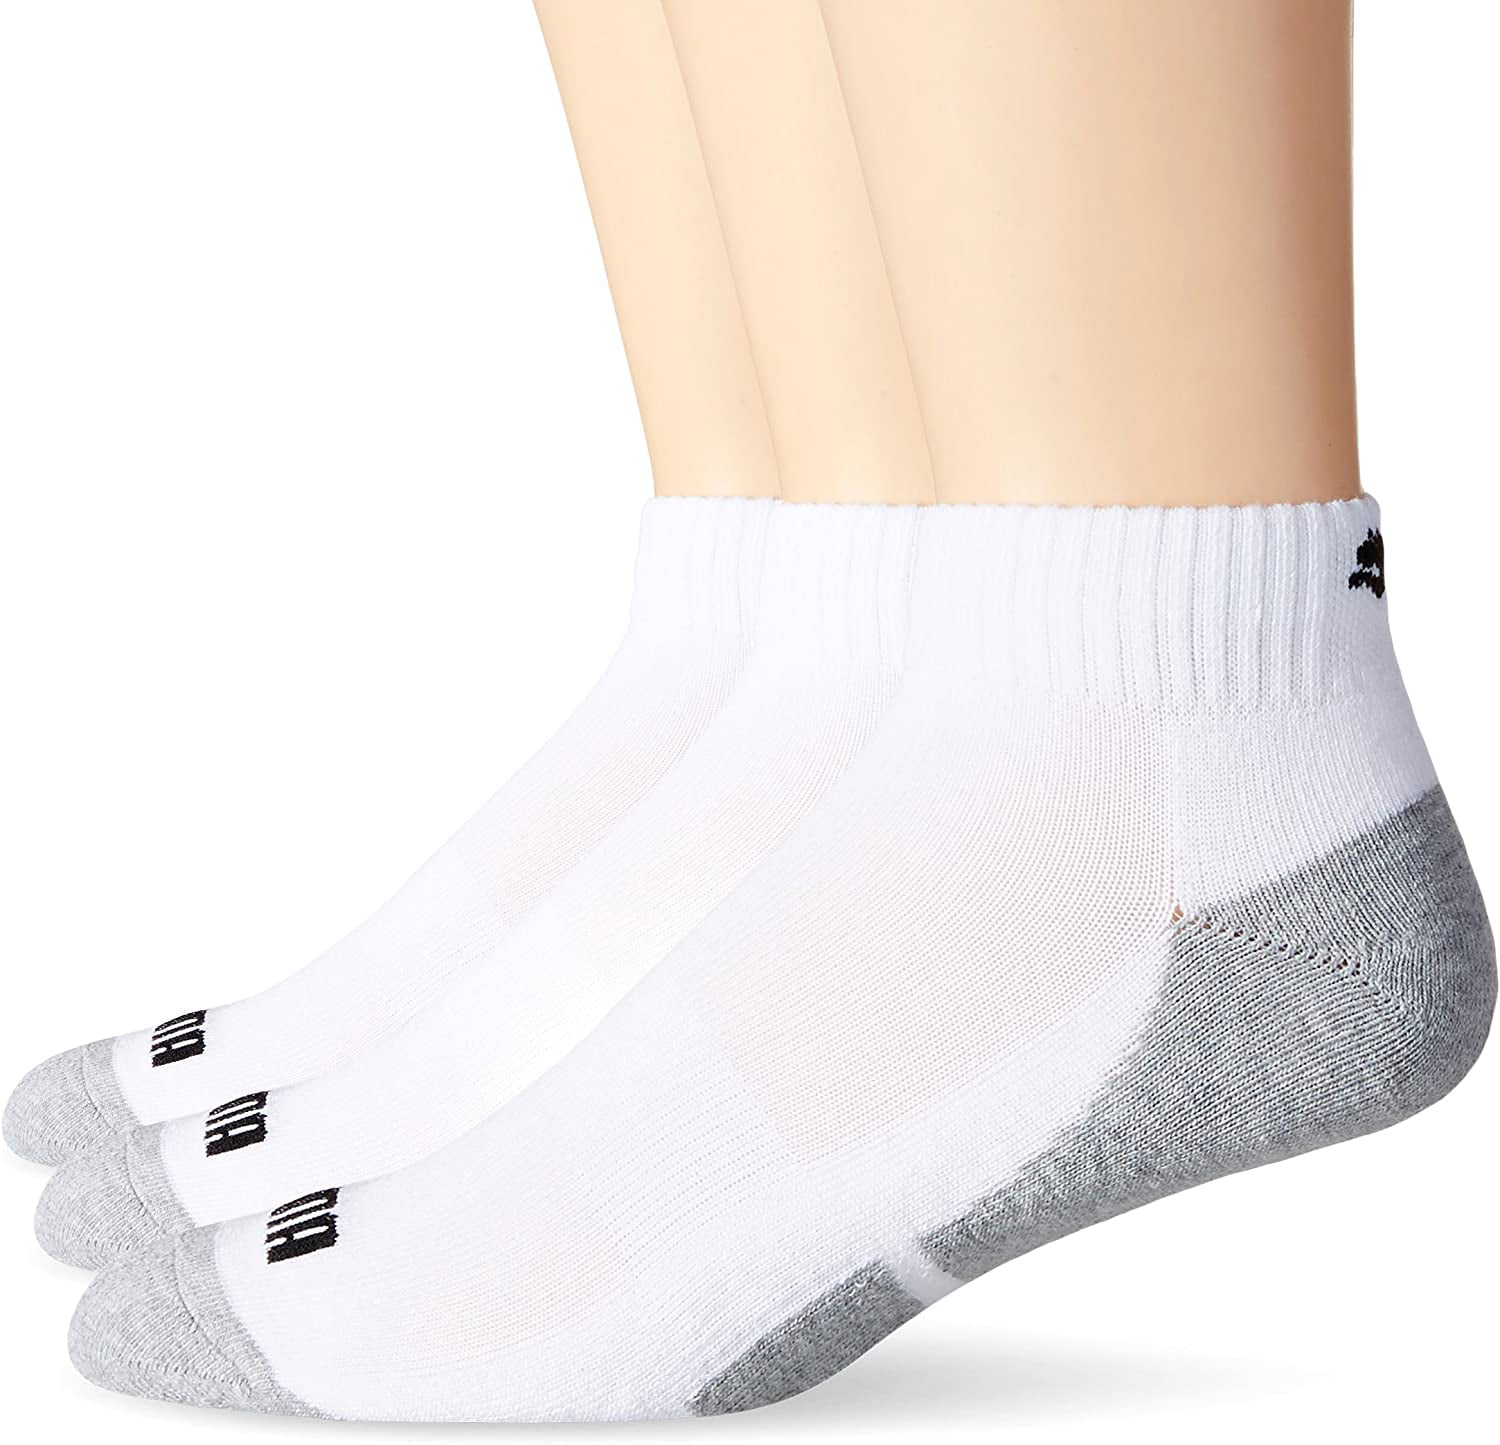 PUMA Socks Men's Quarter Cut Socks, White, Sock Size:10-13/Shoe Size: 6 ...